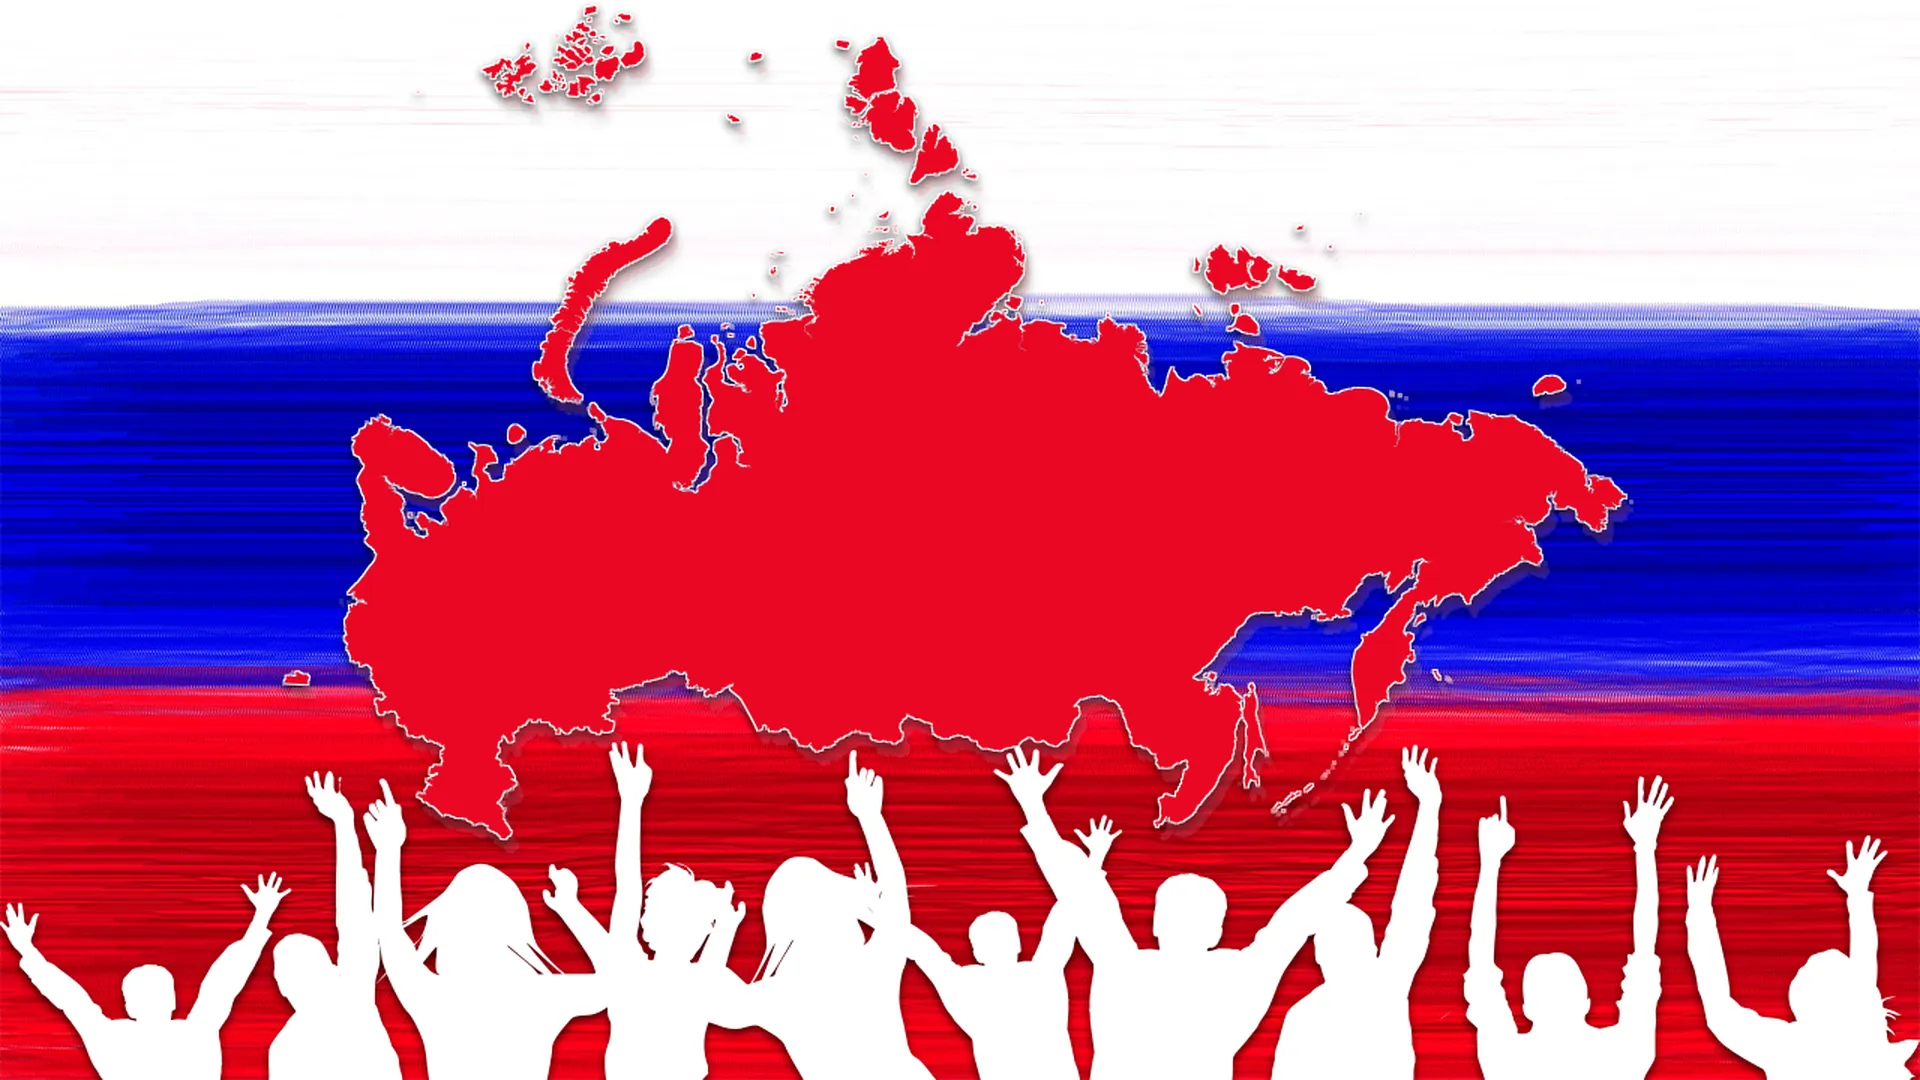 Праздник героизма и сплоченности. Россияне отметят День народного единства 4 ноября